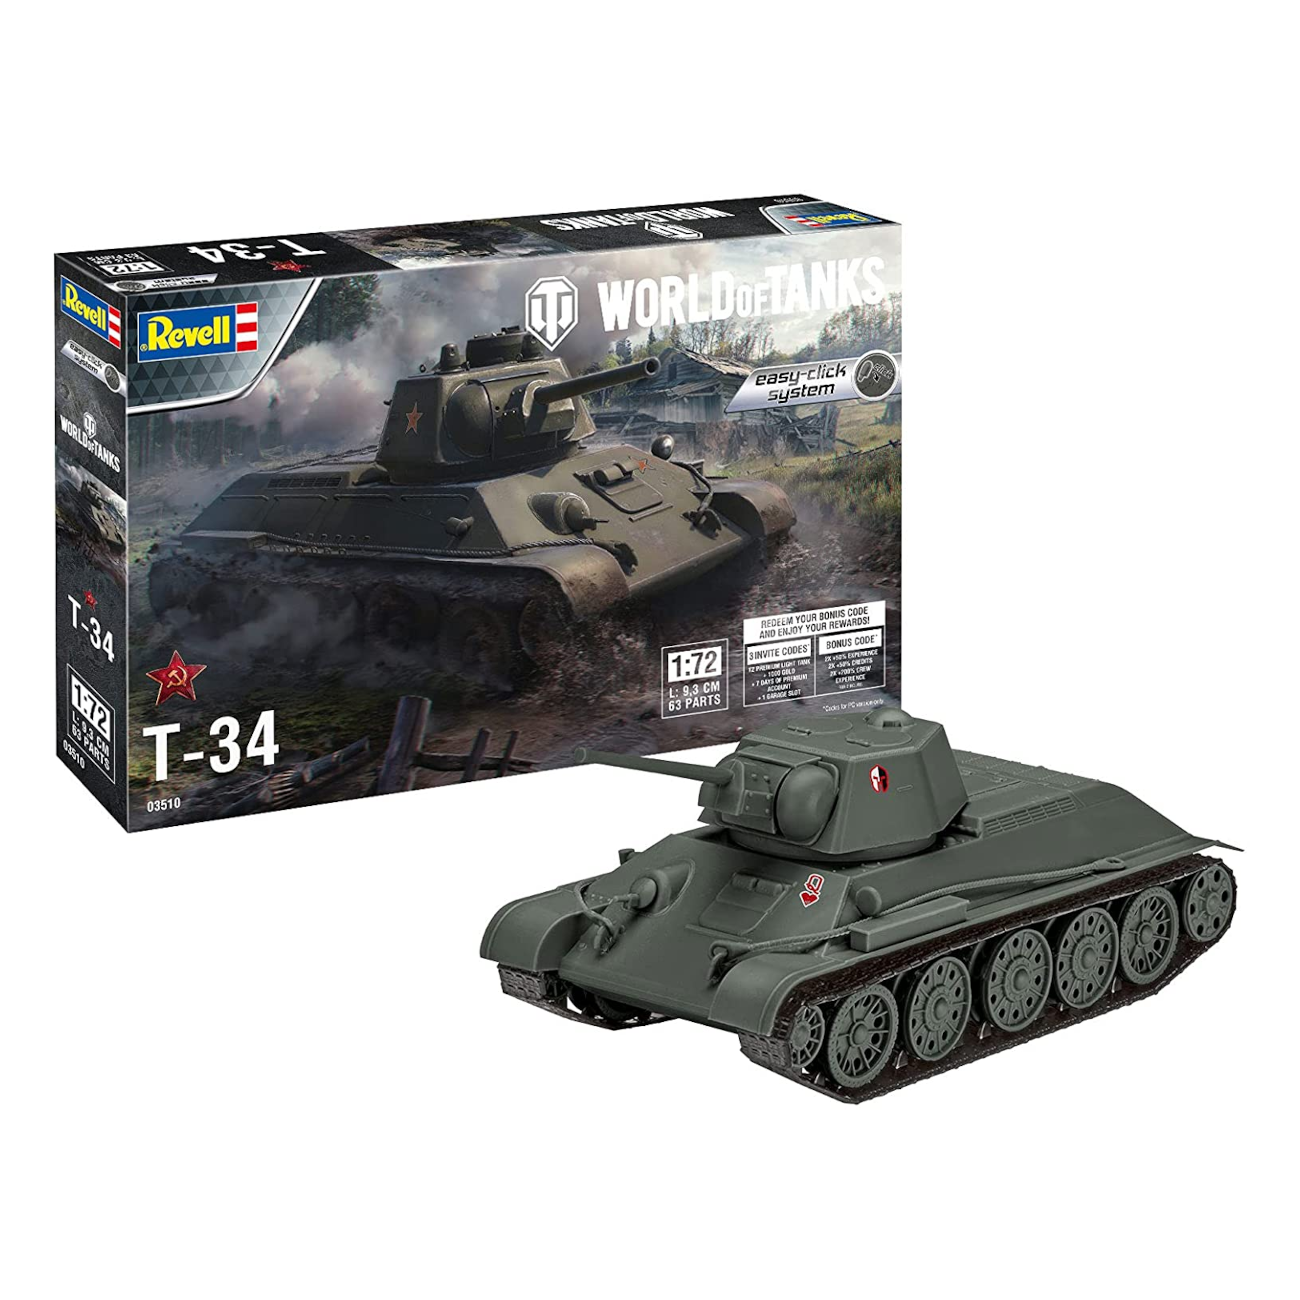 Revell 03510 - T-34 - World of Tanks easy-click